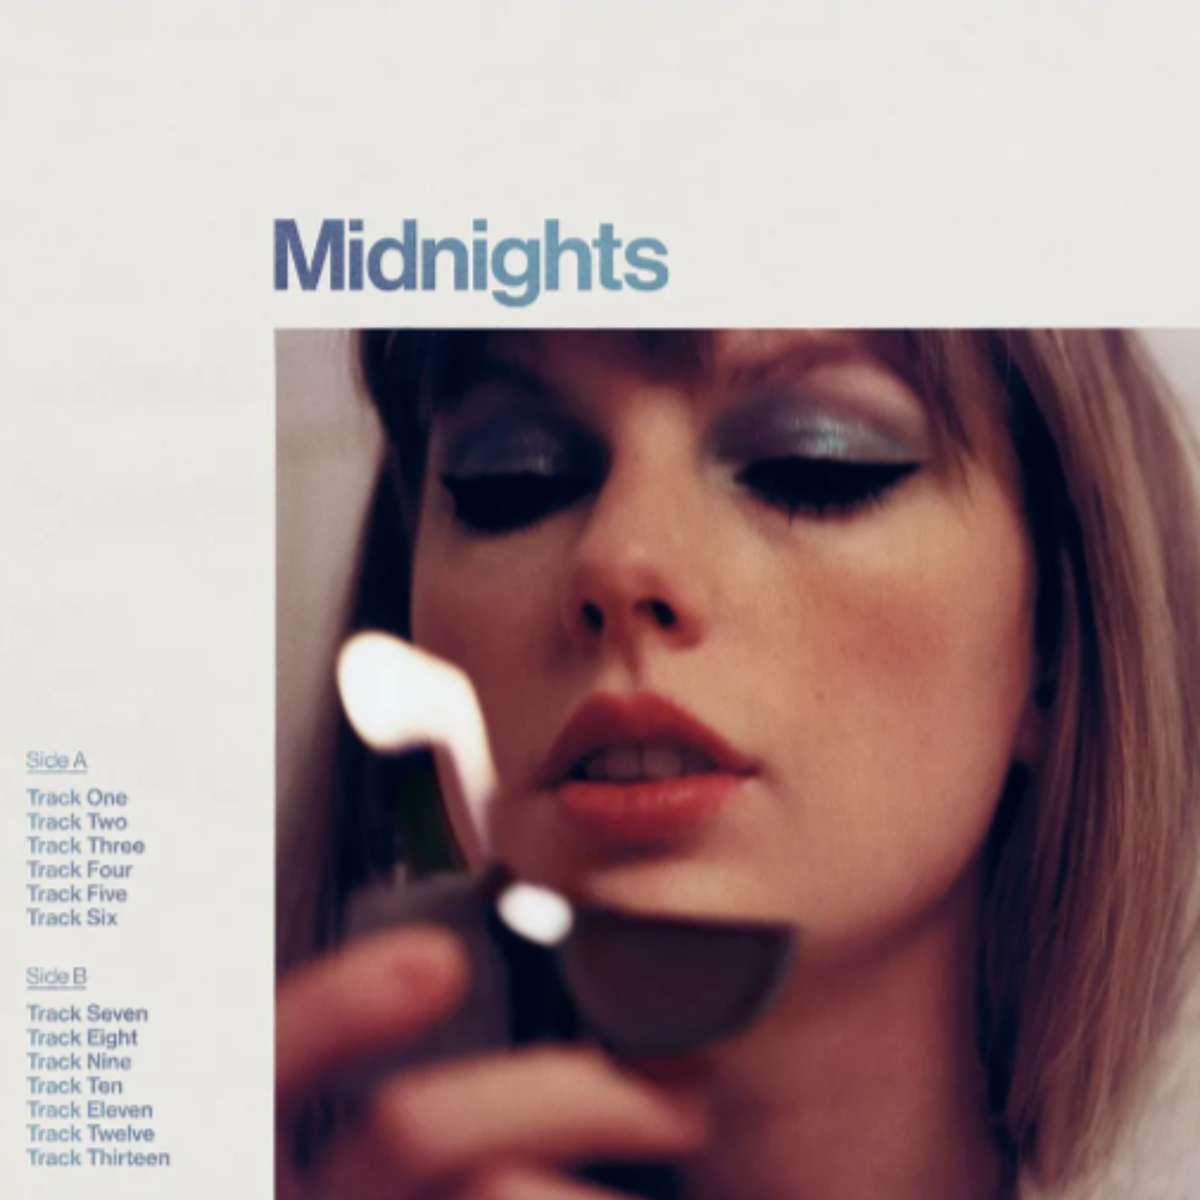 Midnights - Taylor Swift skivomslag pussel online från foto